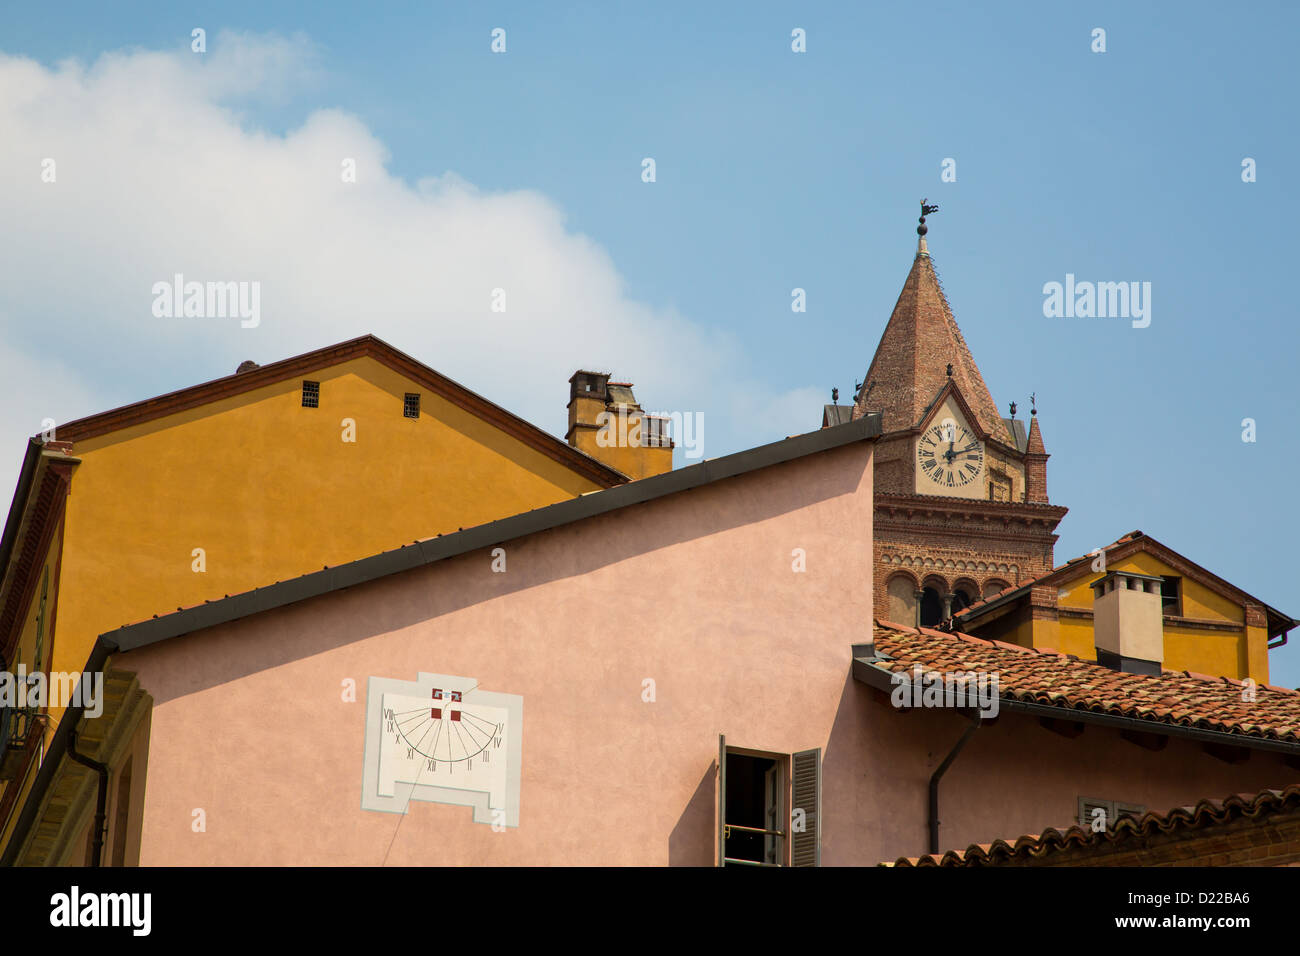 Gebäuden in verschiedenen architektonischen Stilen, einschließlich der Turm der Chiesa di San Domenica zeigt Alba. Region Piemont in Italien Stockfoto